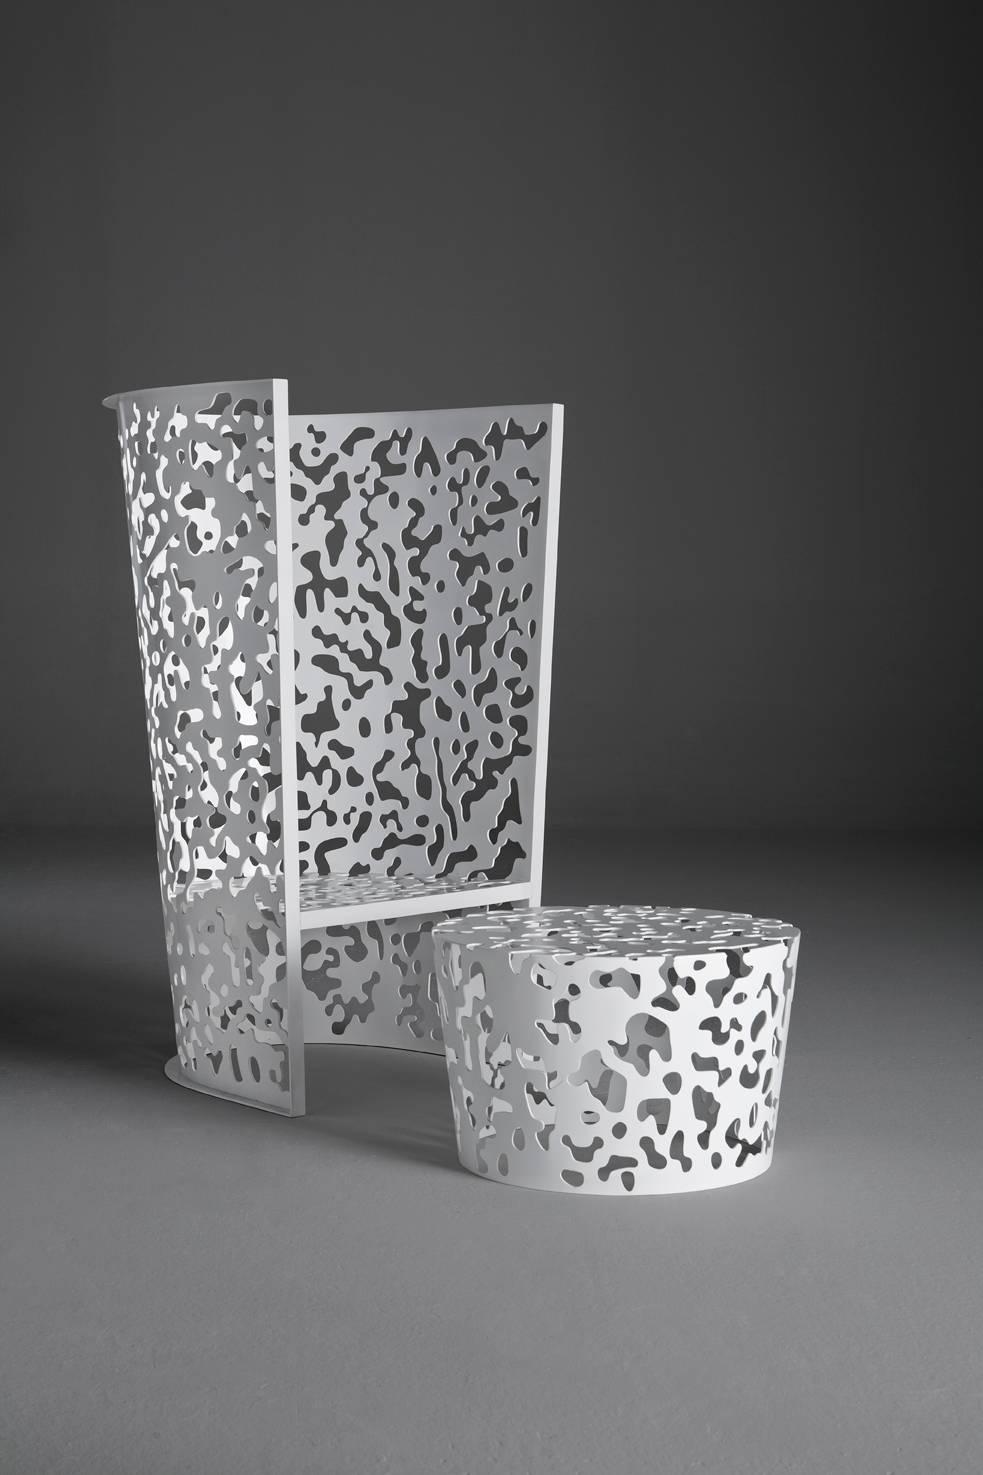 Camouflage ist eine Outdoor-Kollektion, die einen hohen und einen niedrigen Sessel, einen Tisch und einen kleinen Tisch umfasst, die alle aus Aluminium gefertigt sind. Bei diesen skulpturalen Elementen umrahmt das geometrische Design der Struktur